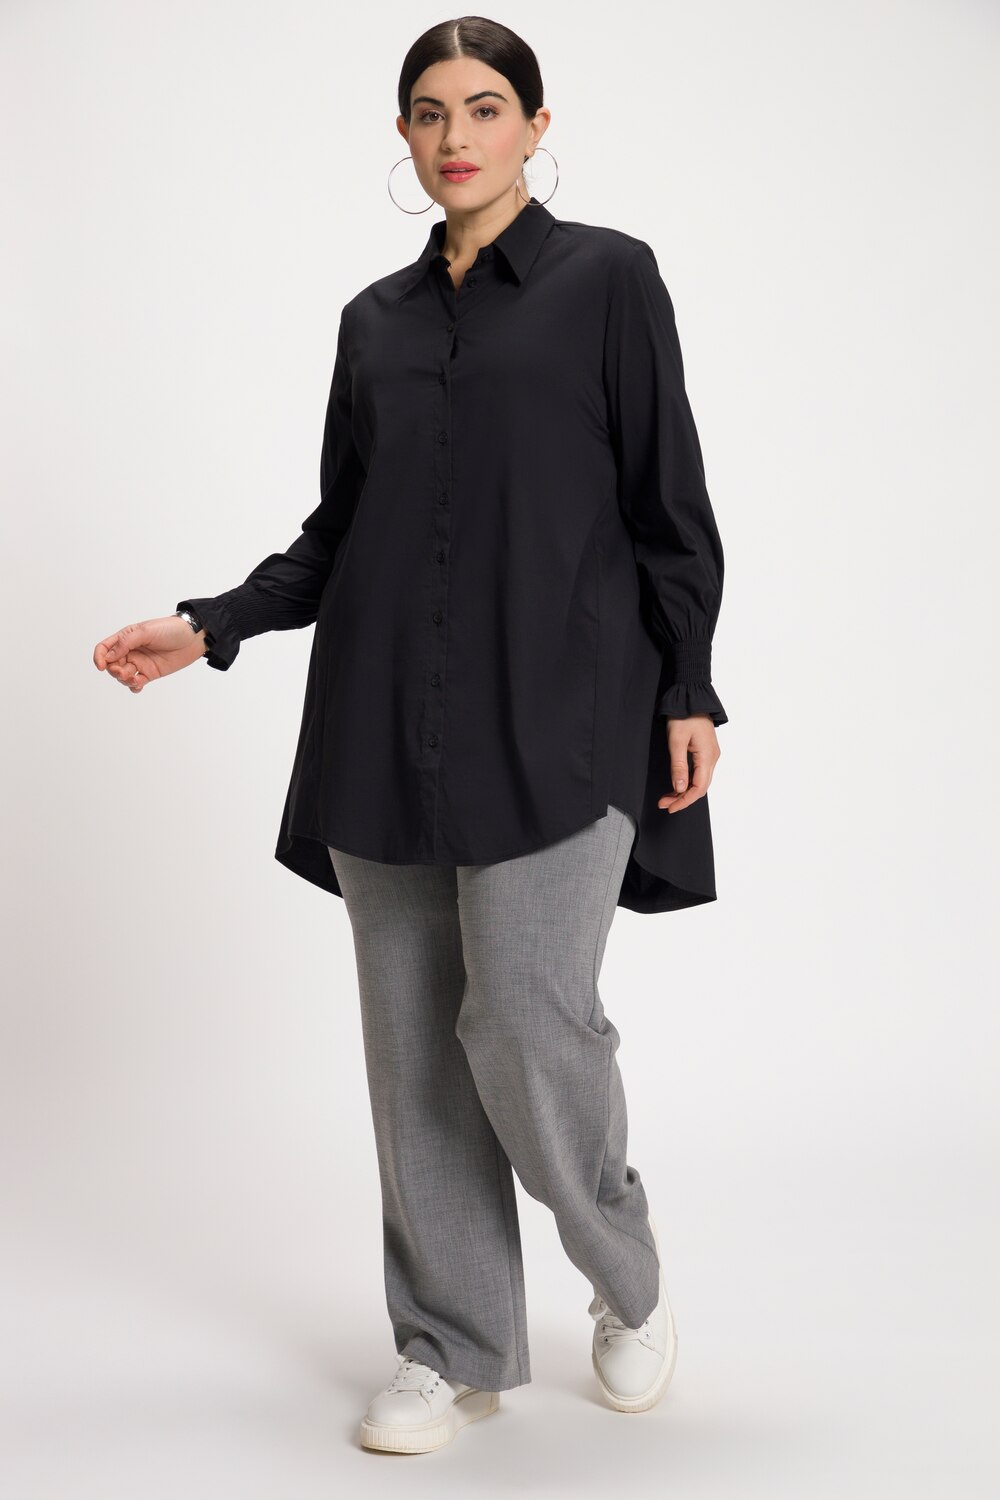 Grote Maten blouse, Dames, zwart, Maat: 46/48, Katoen/Synthetische vezels, Ulla Popken